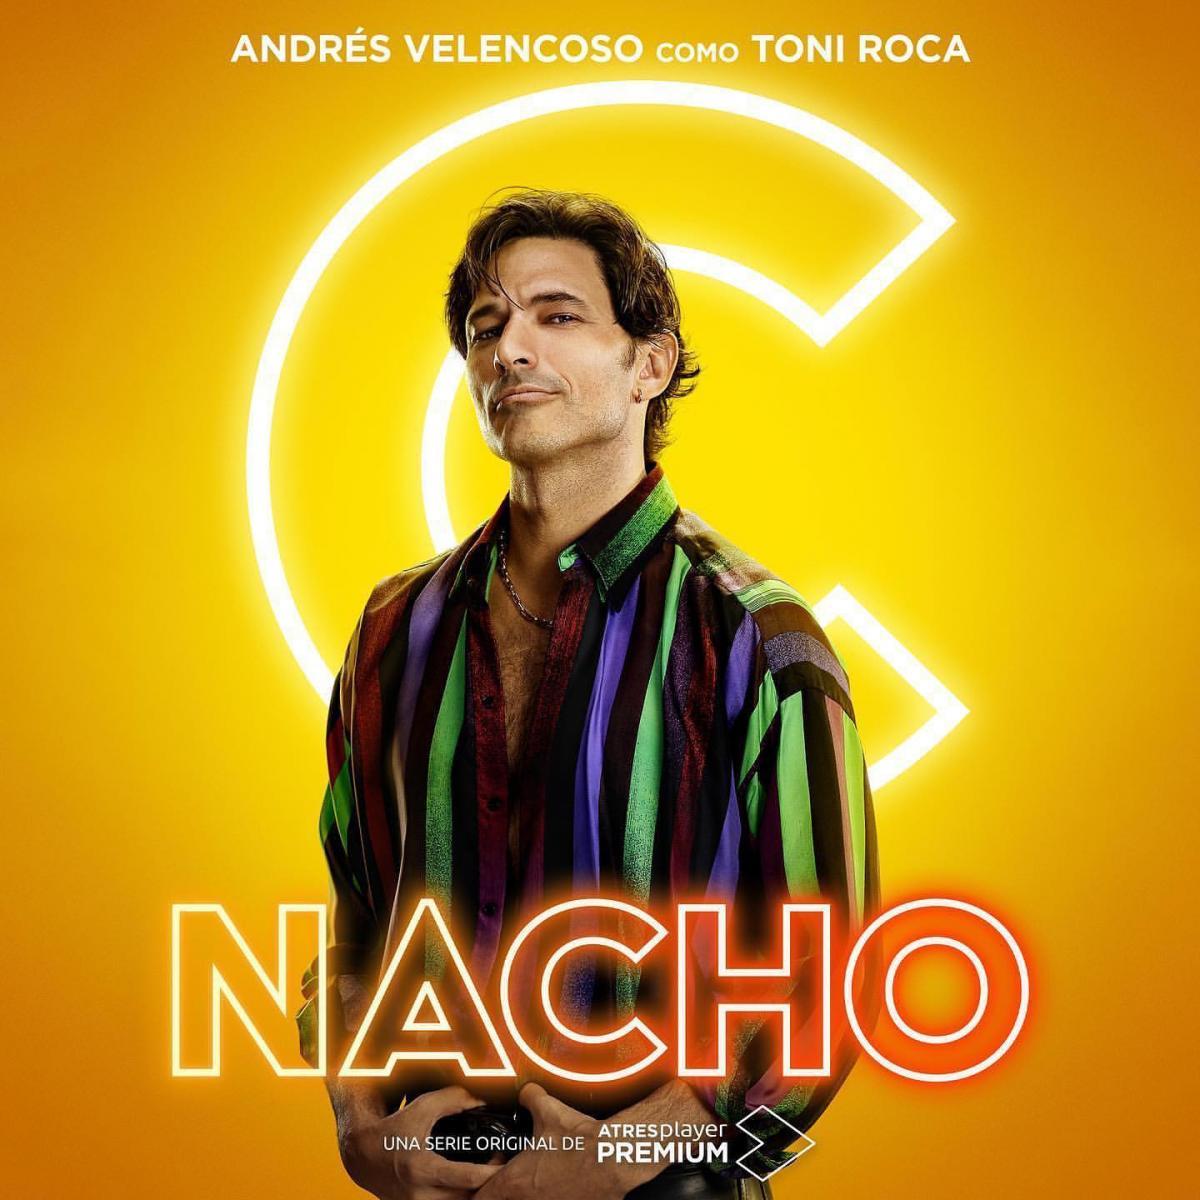 Todo el mundo flipando con lo sexy que está Martiño en #Nacho (que lo está, por supuesto), pero lo de @andresvelencoso es que no es de esta galaxia. 🔥